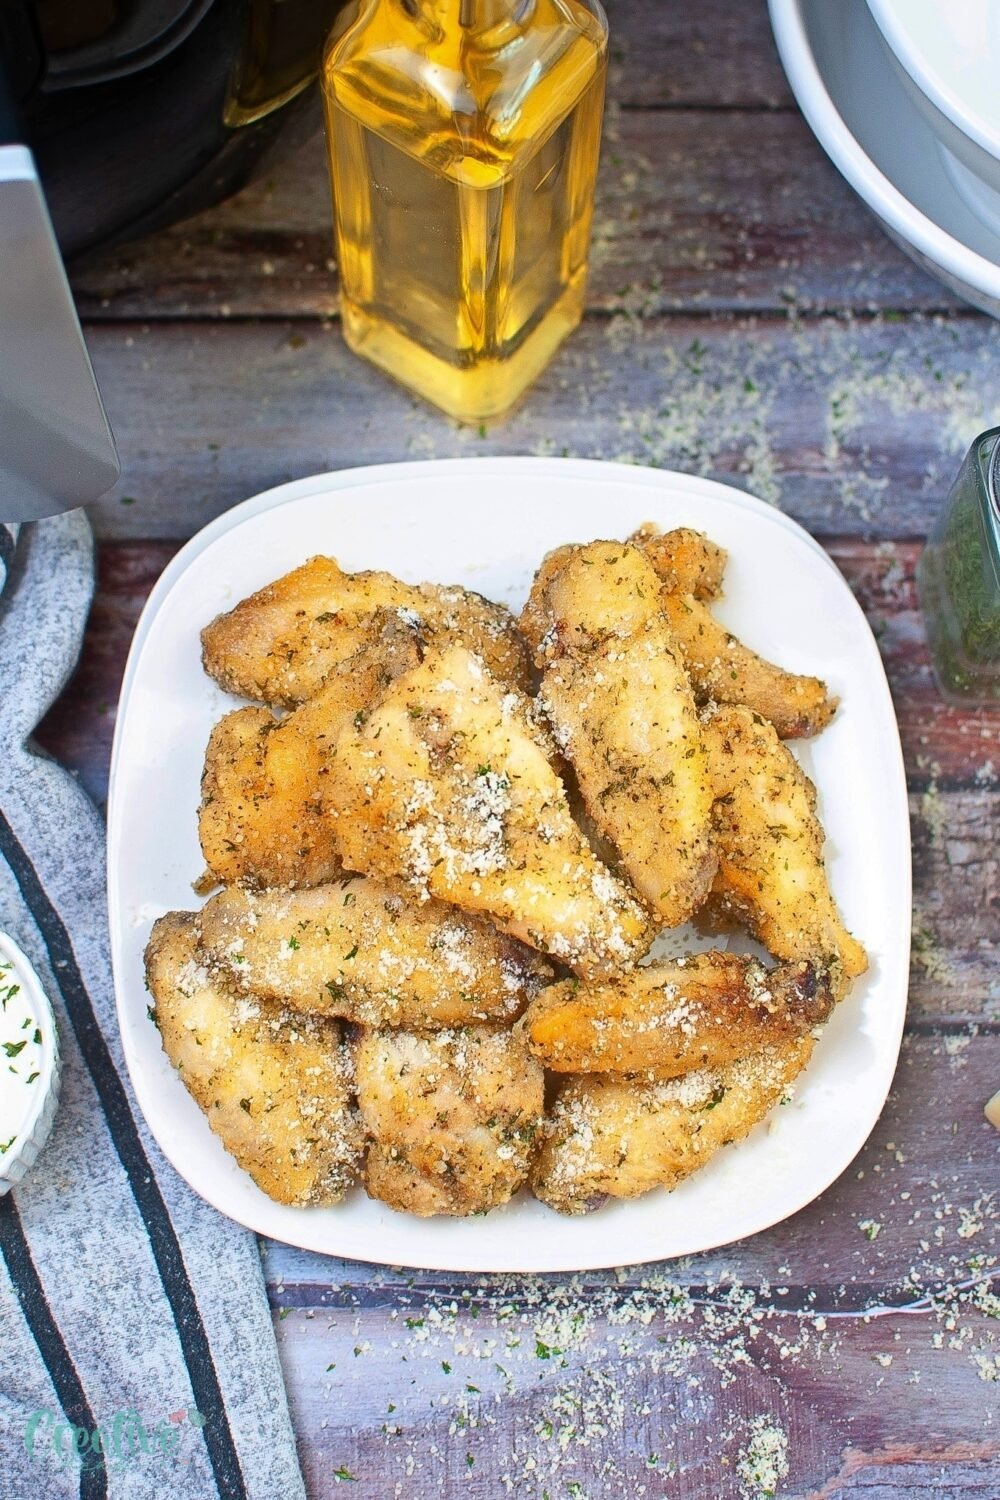 Healthier air fryer garlic parmesan chicken wings - crispy, juicy, and full of flavor!